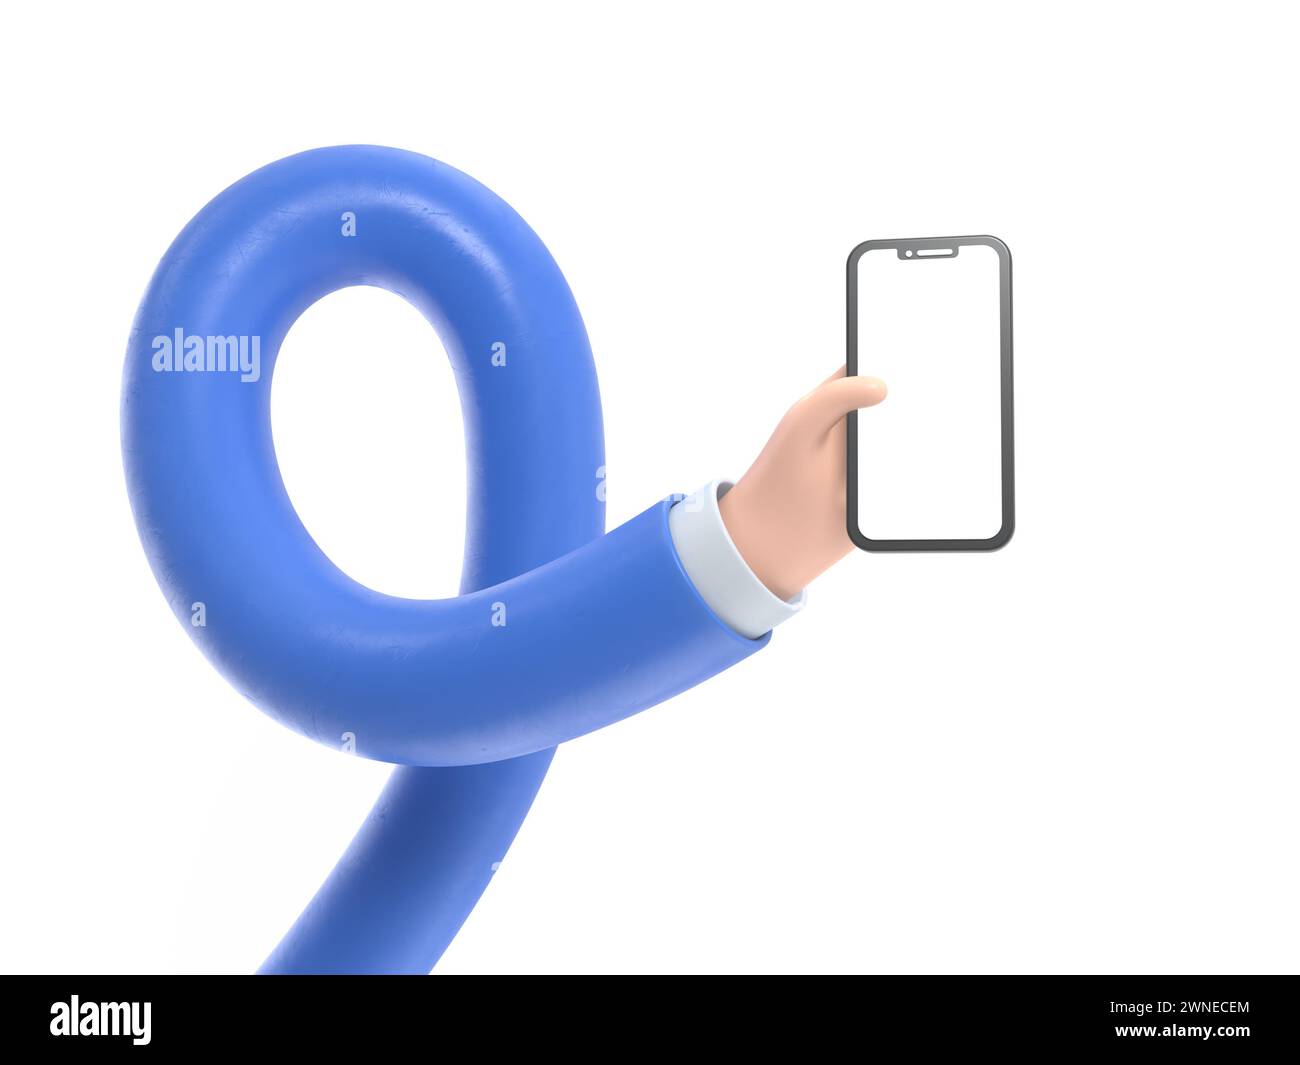 Icône de geste de dessin animé Mockup.3d main touchant smartphone. Icône de dessin animé ou maquette de l'utilisation d'un téléphone mobile, rendu 3D sur fond blanc.long Arms conc Banque D'Images